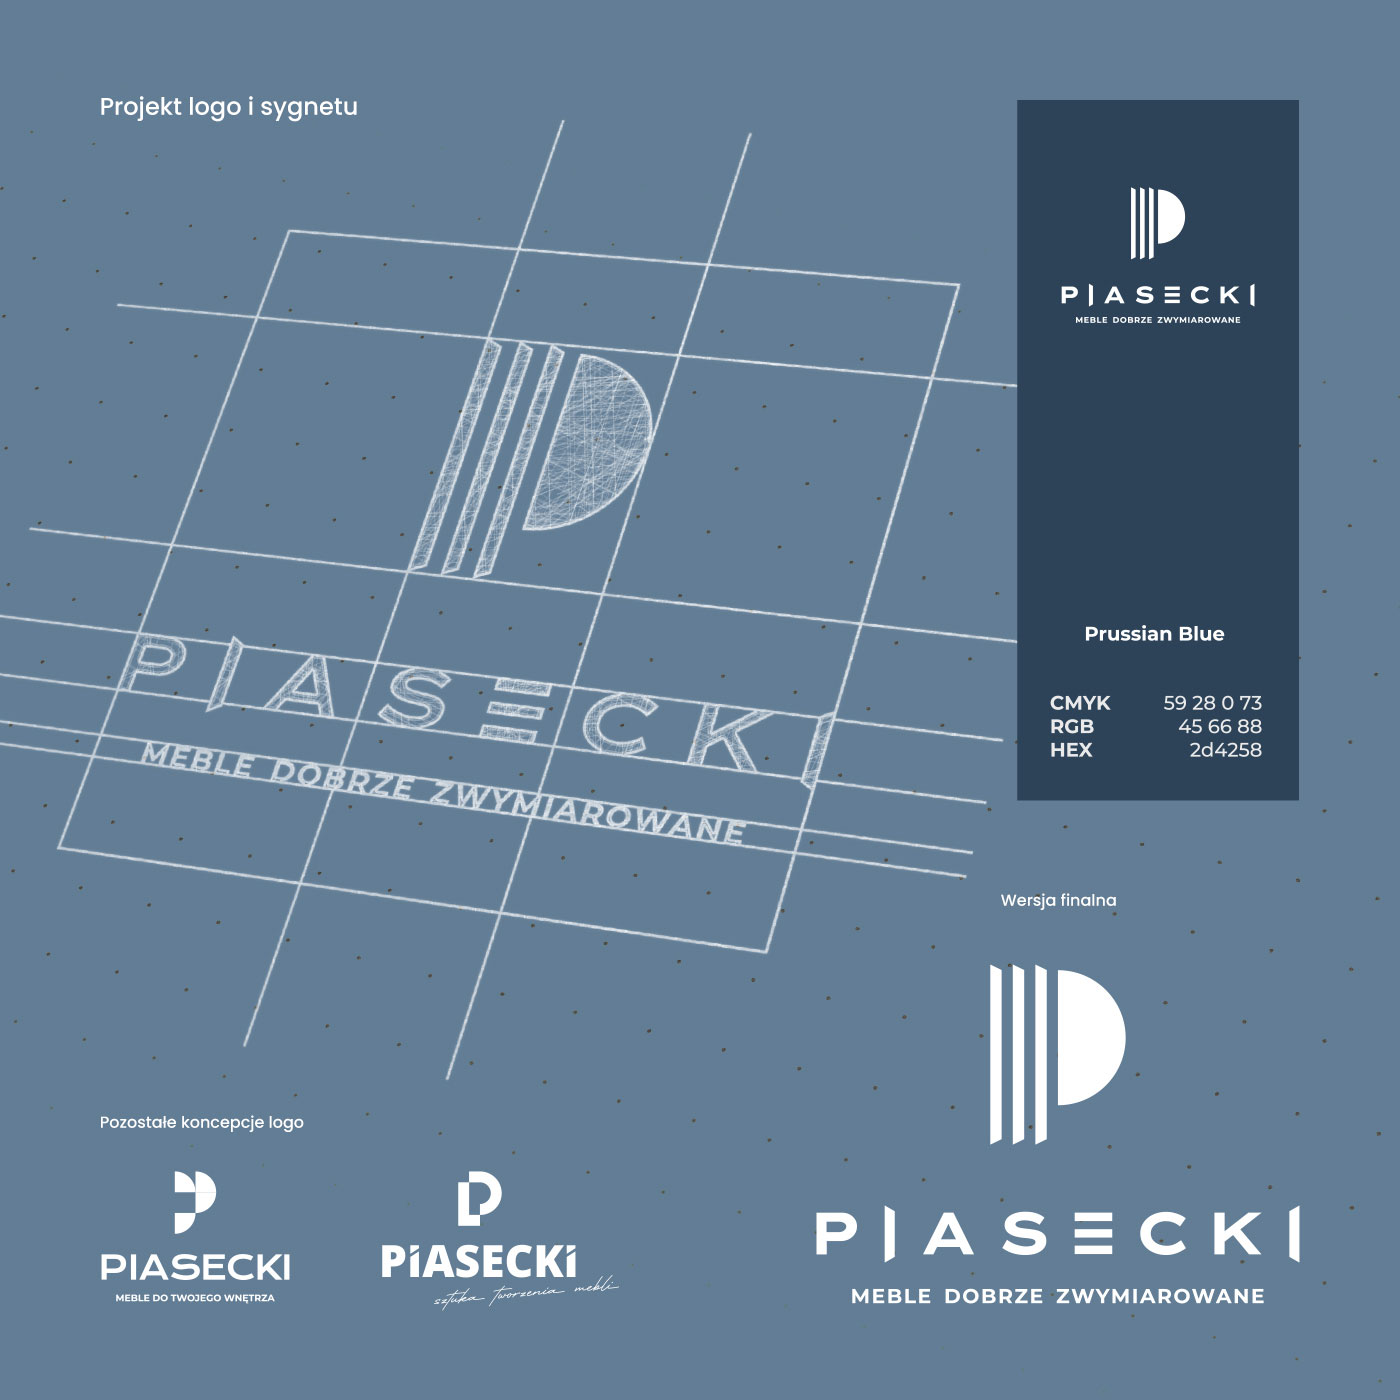 Projekt logo i sygnetu Piasecki Meble dobrze zwymiarowane. Pozostałe koncepcje logo i wersja finalna.